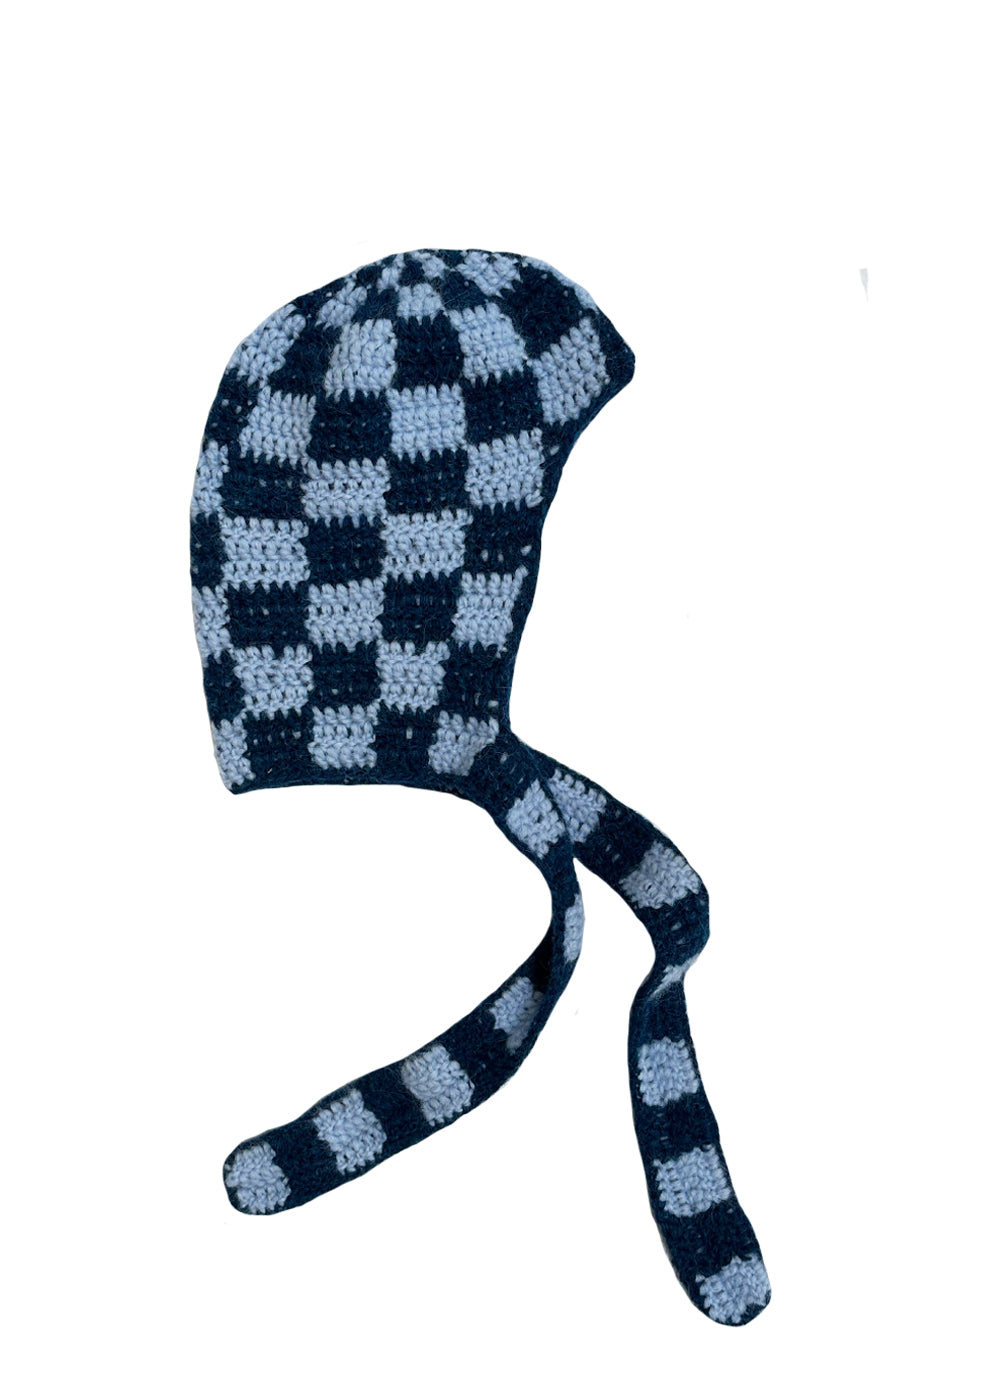 Crochet Hood (blue/light blue)